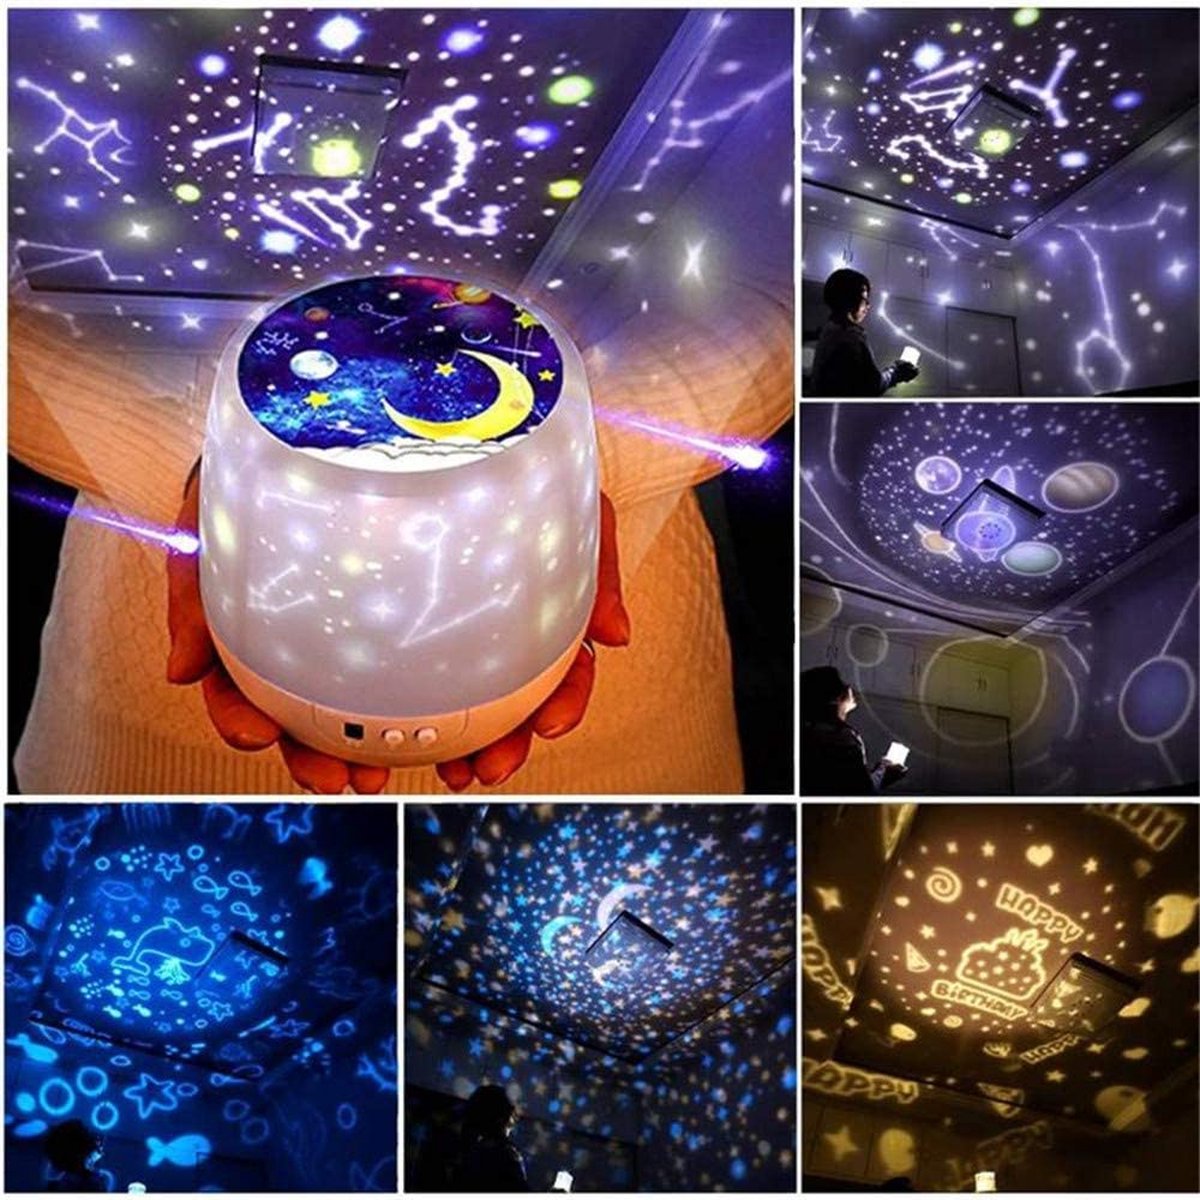 Veilleuse projecteur à LED astronaute pour décorer la chambre, abat-jour de  nuit, cadeau pour les enfants et les adultes